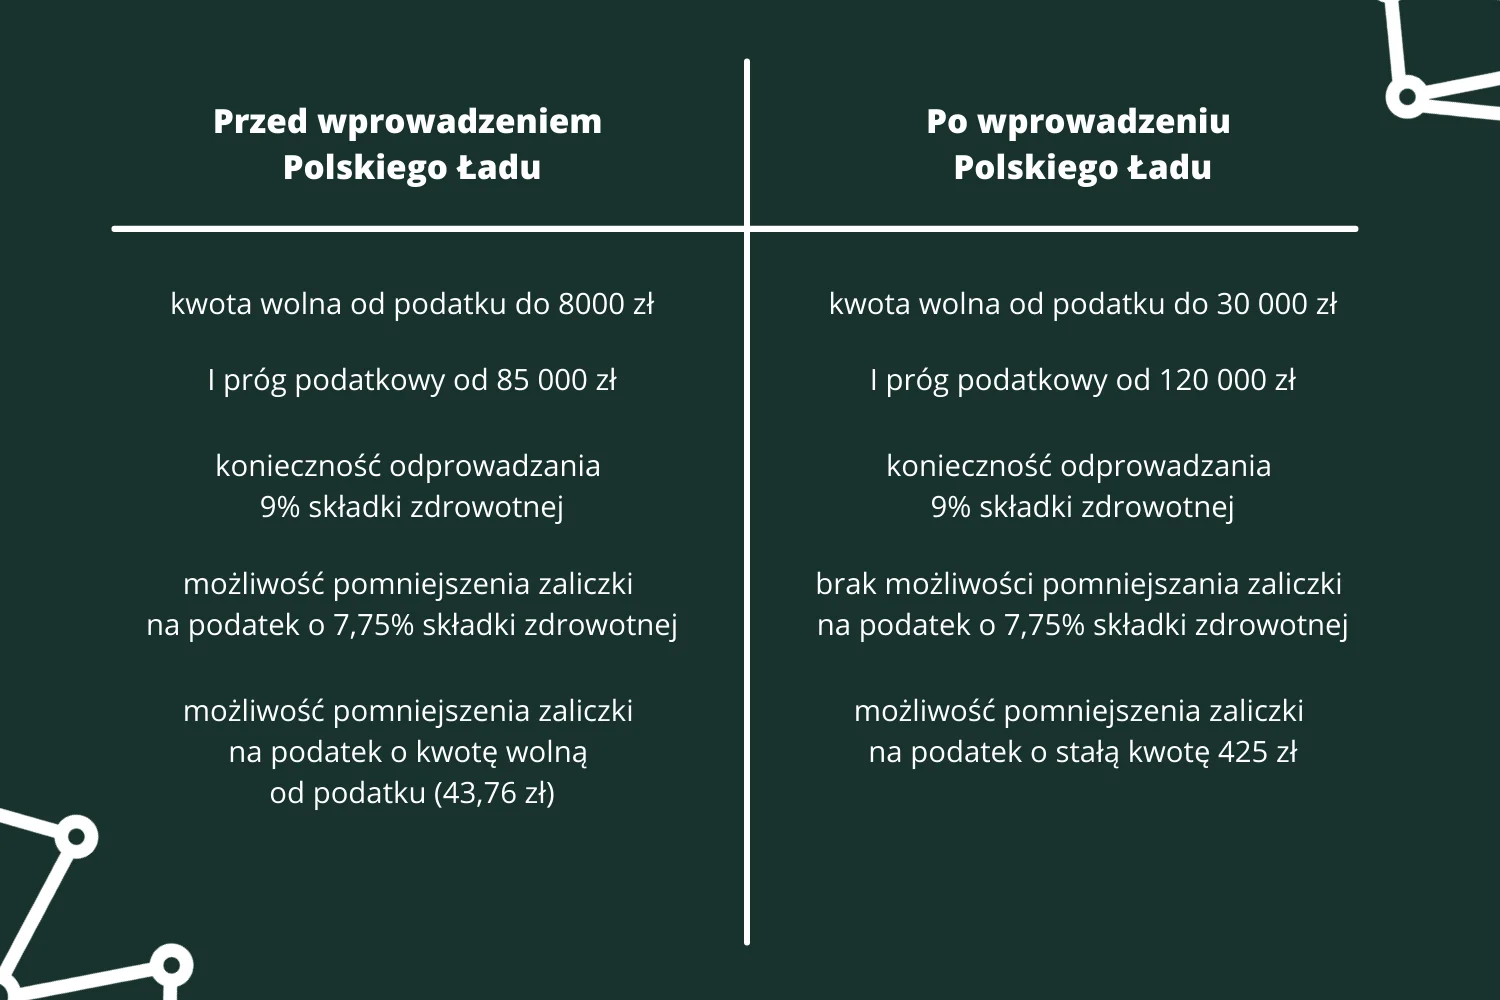 Zagrożenia dla przemysłu po wprowadzeniu Polskiego Ładu